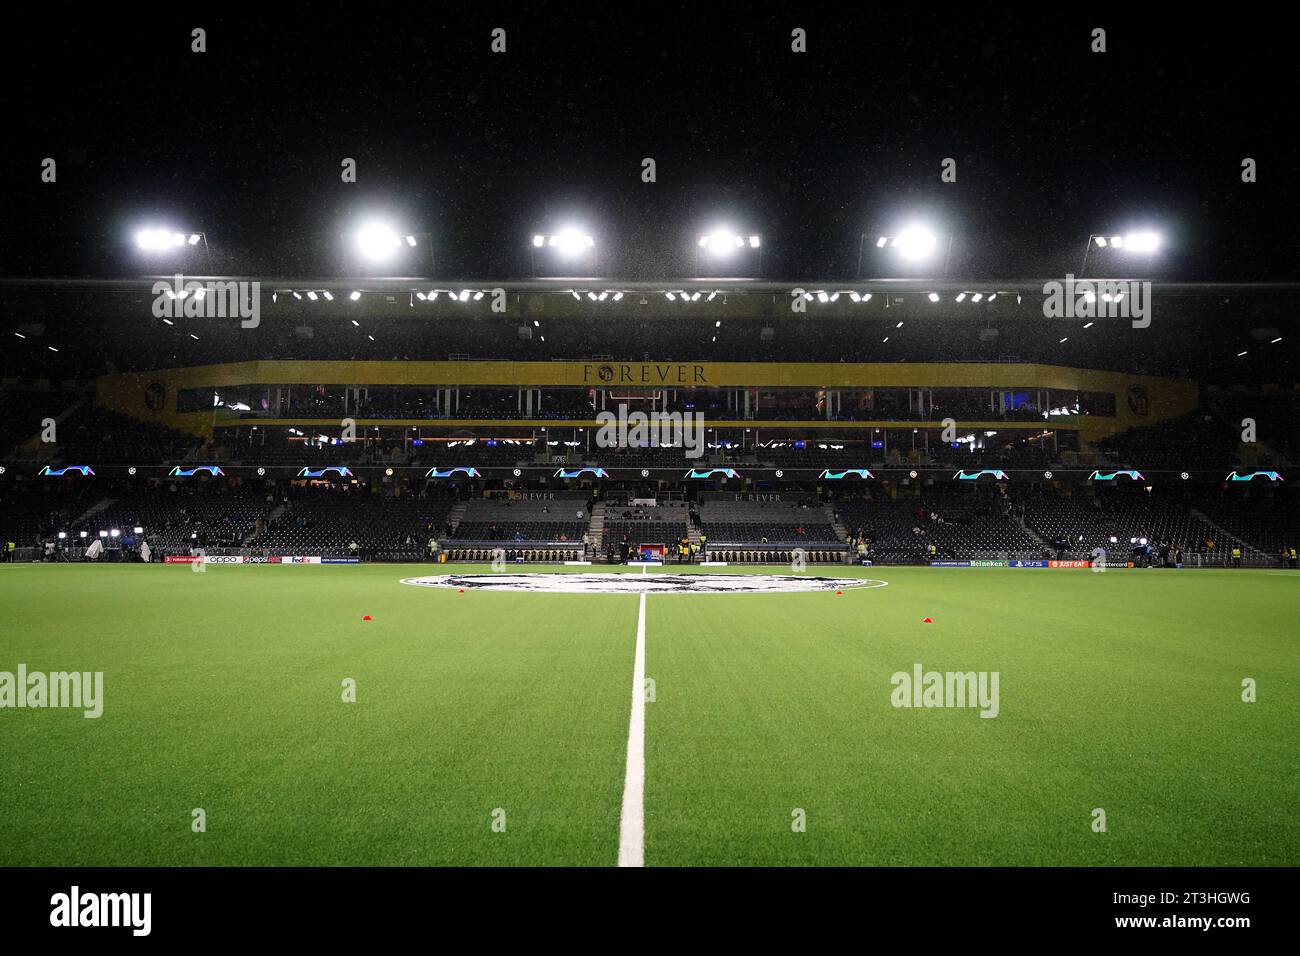 Ein allgemeiner Blick in das Stadion vor dem Spiel der UEFA Champions League Gruppe G im Wankdorf Stadion in Bern, Schweiz. Bilddatum: Mittwoch, 25. Oktober 2023. Stockfoto